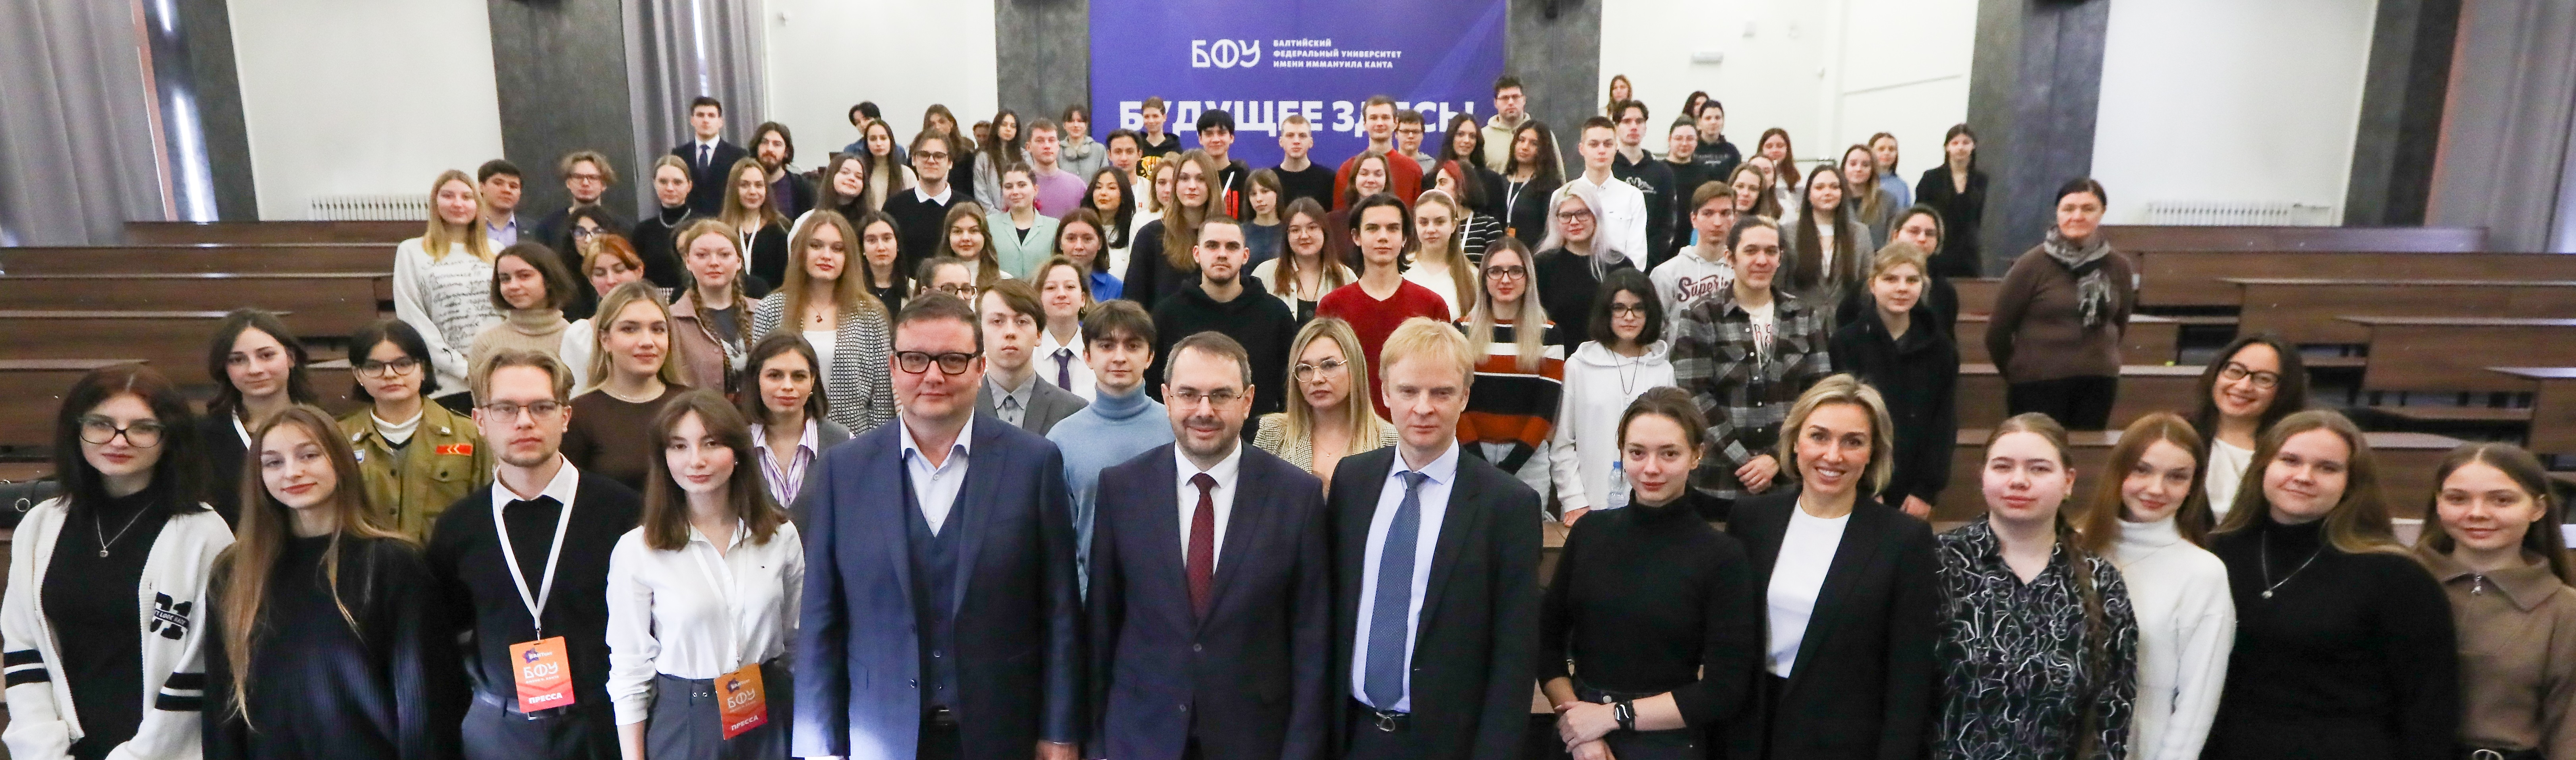 В Калининграде открылась региональная площадка студенческого Медиацентра Минобрнауки России 